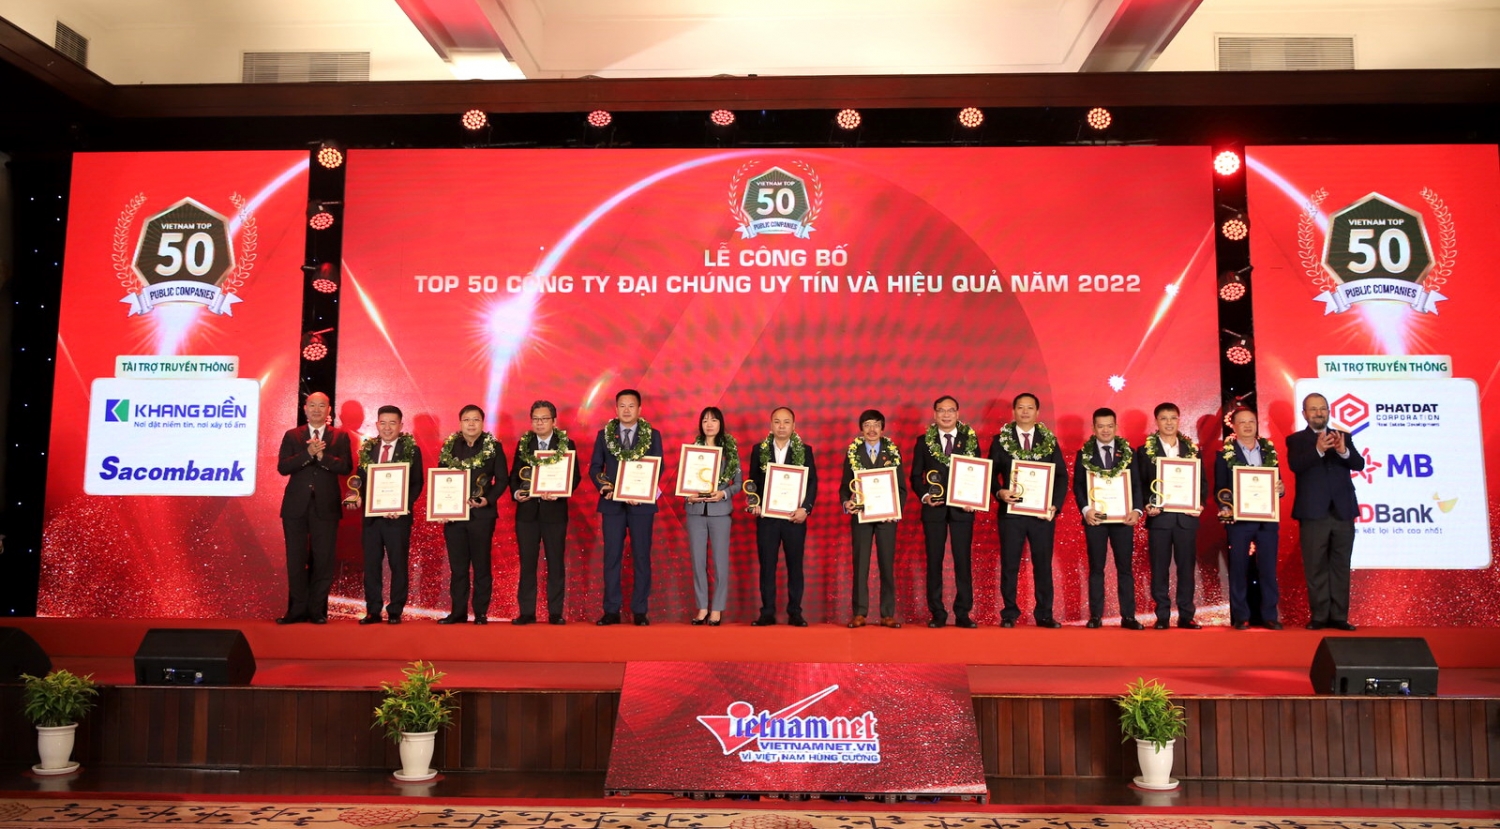 Bảng xếp hạng VIX50 nhằm tôn vinh các doanh nghiệp đại chúng có uy tín, hoạt động hiệu quả, ổn định, đóng góp cho sự phát triển của nền kinh tế Việt Nam